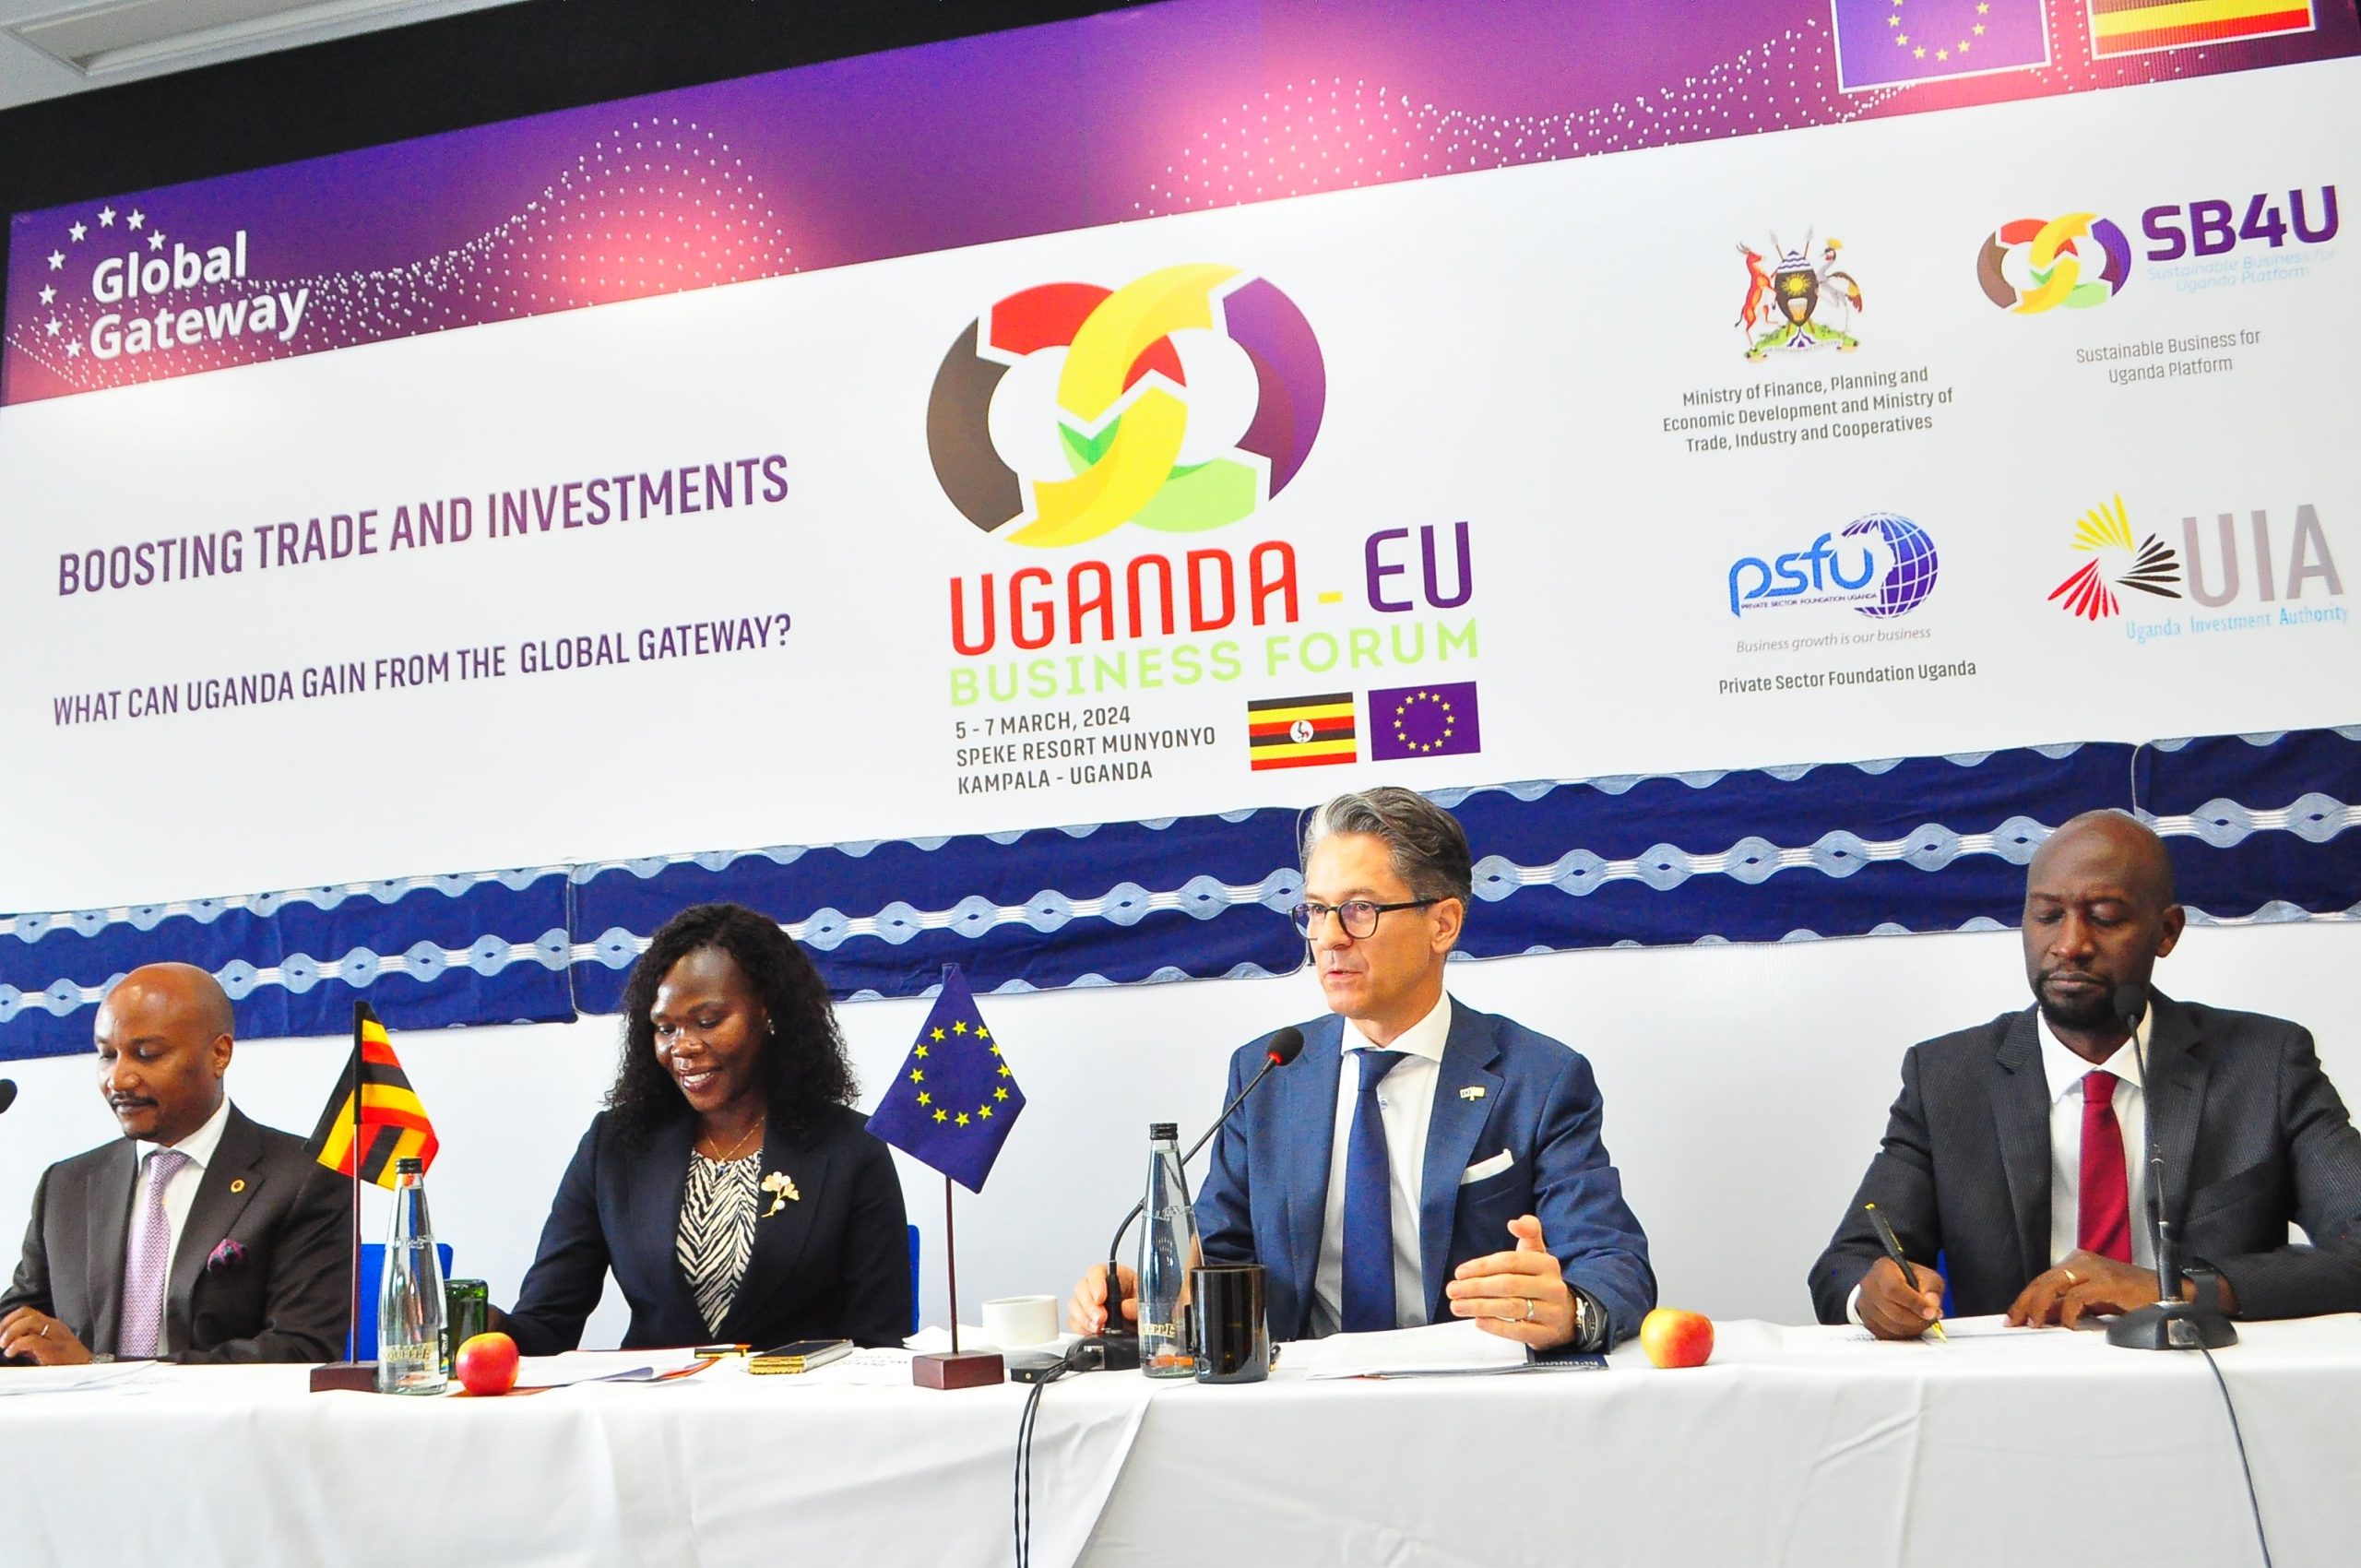 Uganda-EU Business Forum Draws Over 3,600 Participants